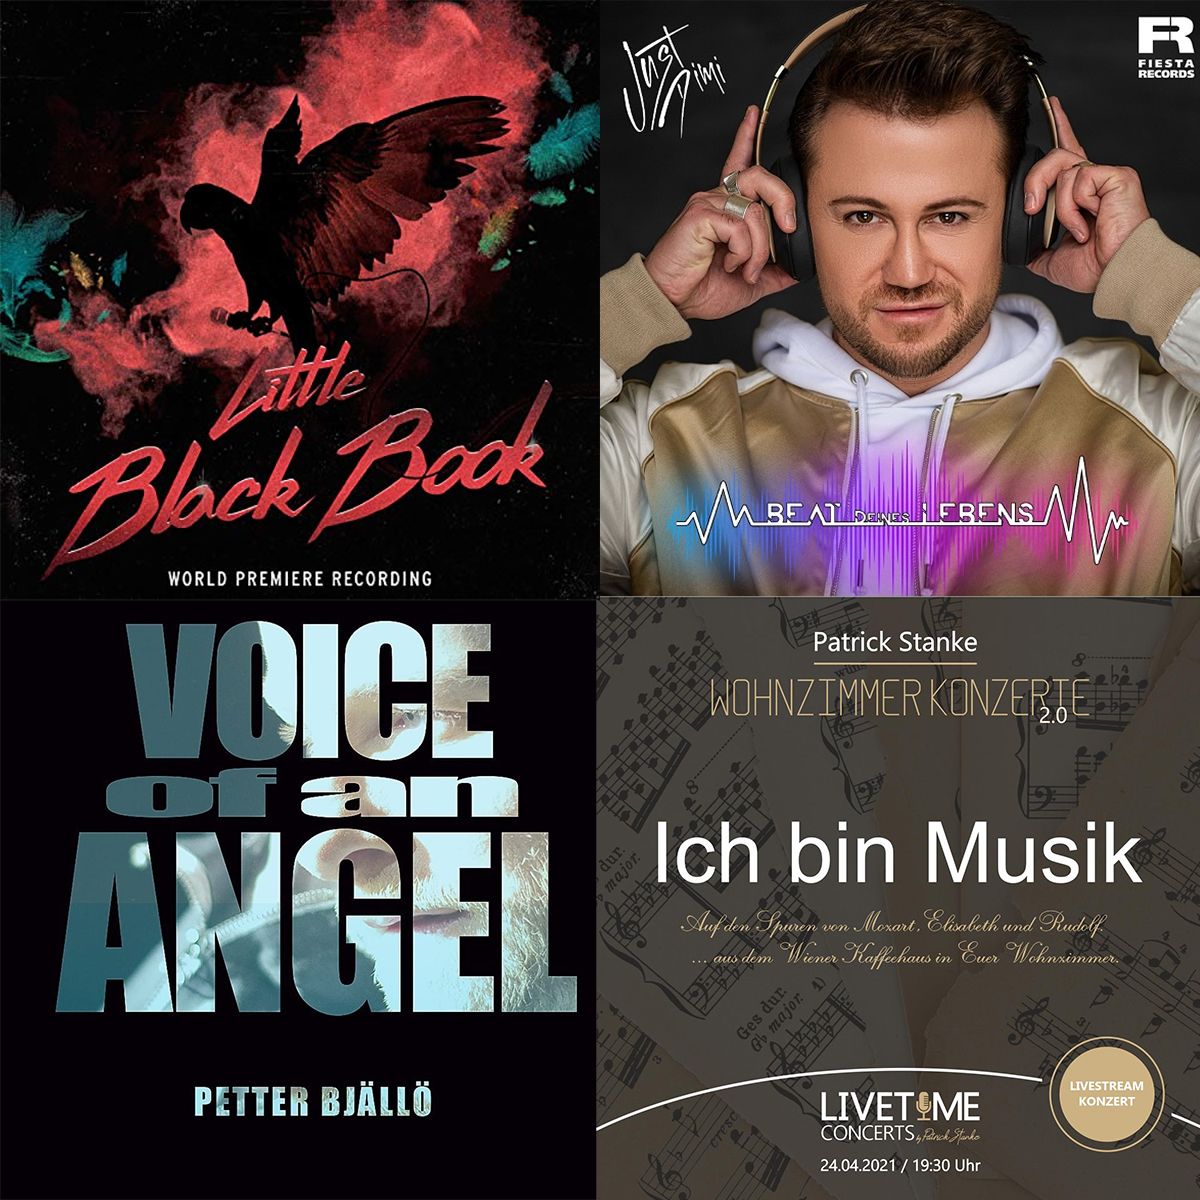 36e969c5012571ad1e3196db7df7da32_XL Musikwunschdatenbank-Update - musicalradio.de | Musicals kostenlos im Radio